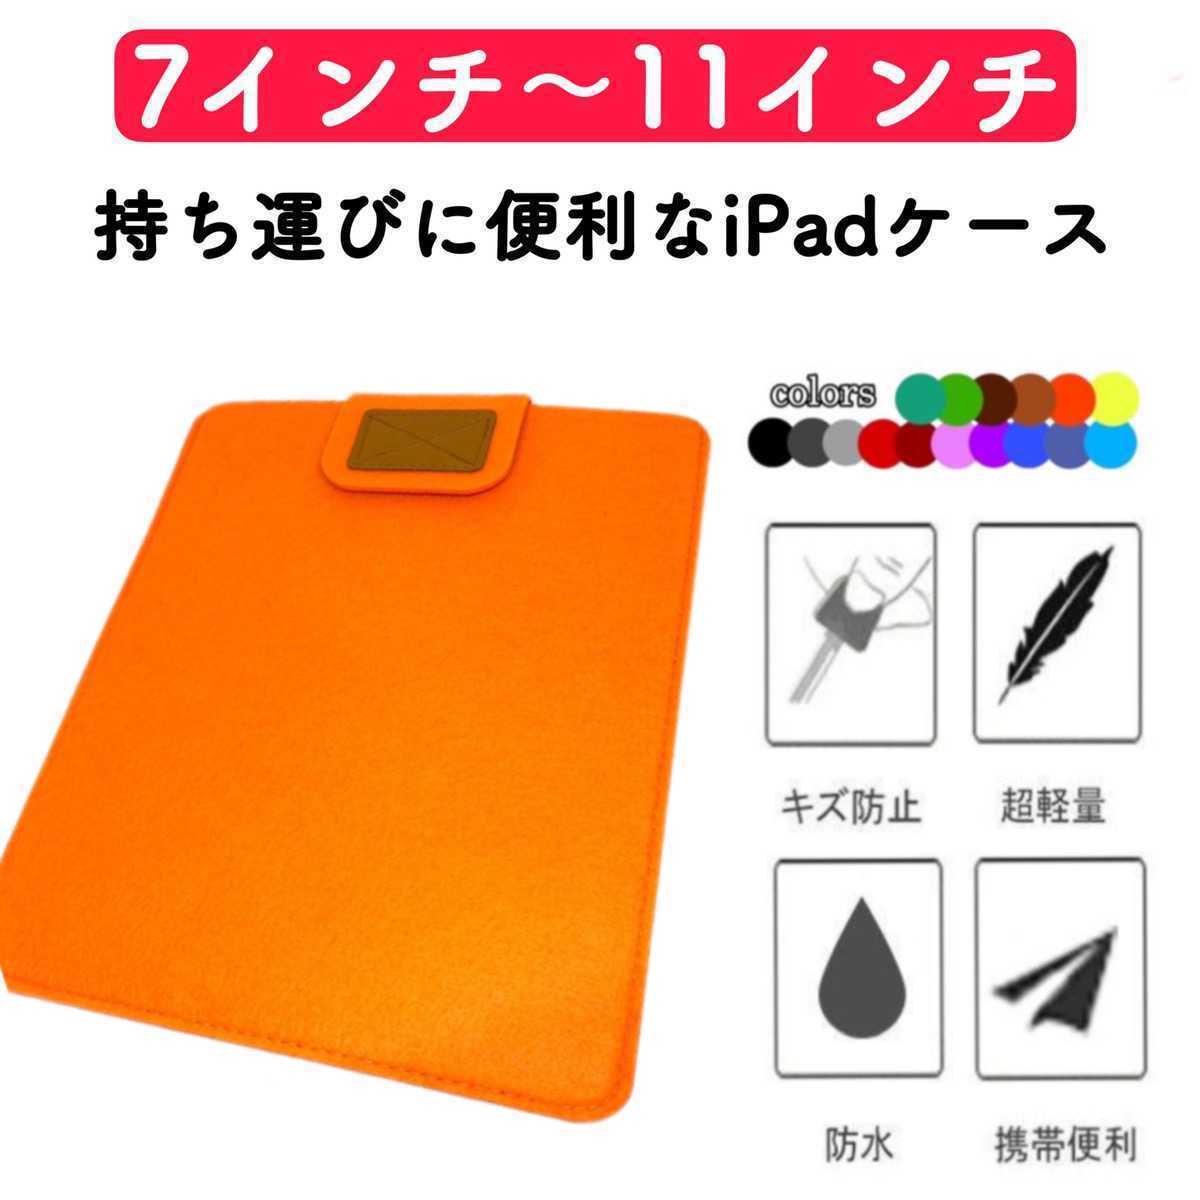 タブレットケース iPadケース コンパクト 薄型 フェルト カバー オレンジ 激安 7インチ 8インチ 9インチ 10インチ 11インチ 保護ケースの画像1